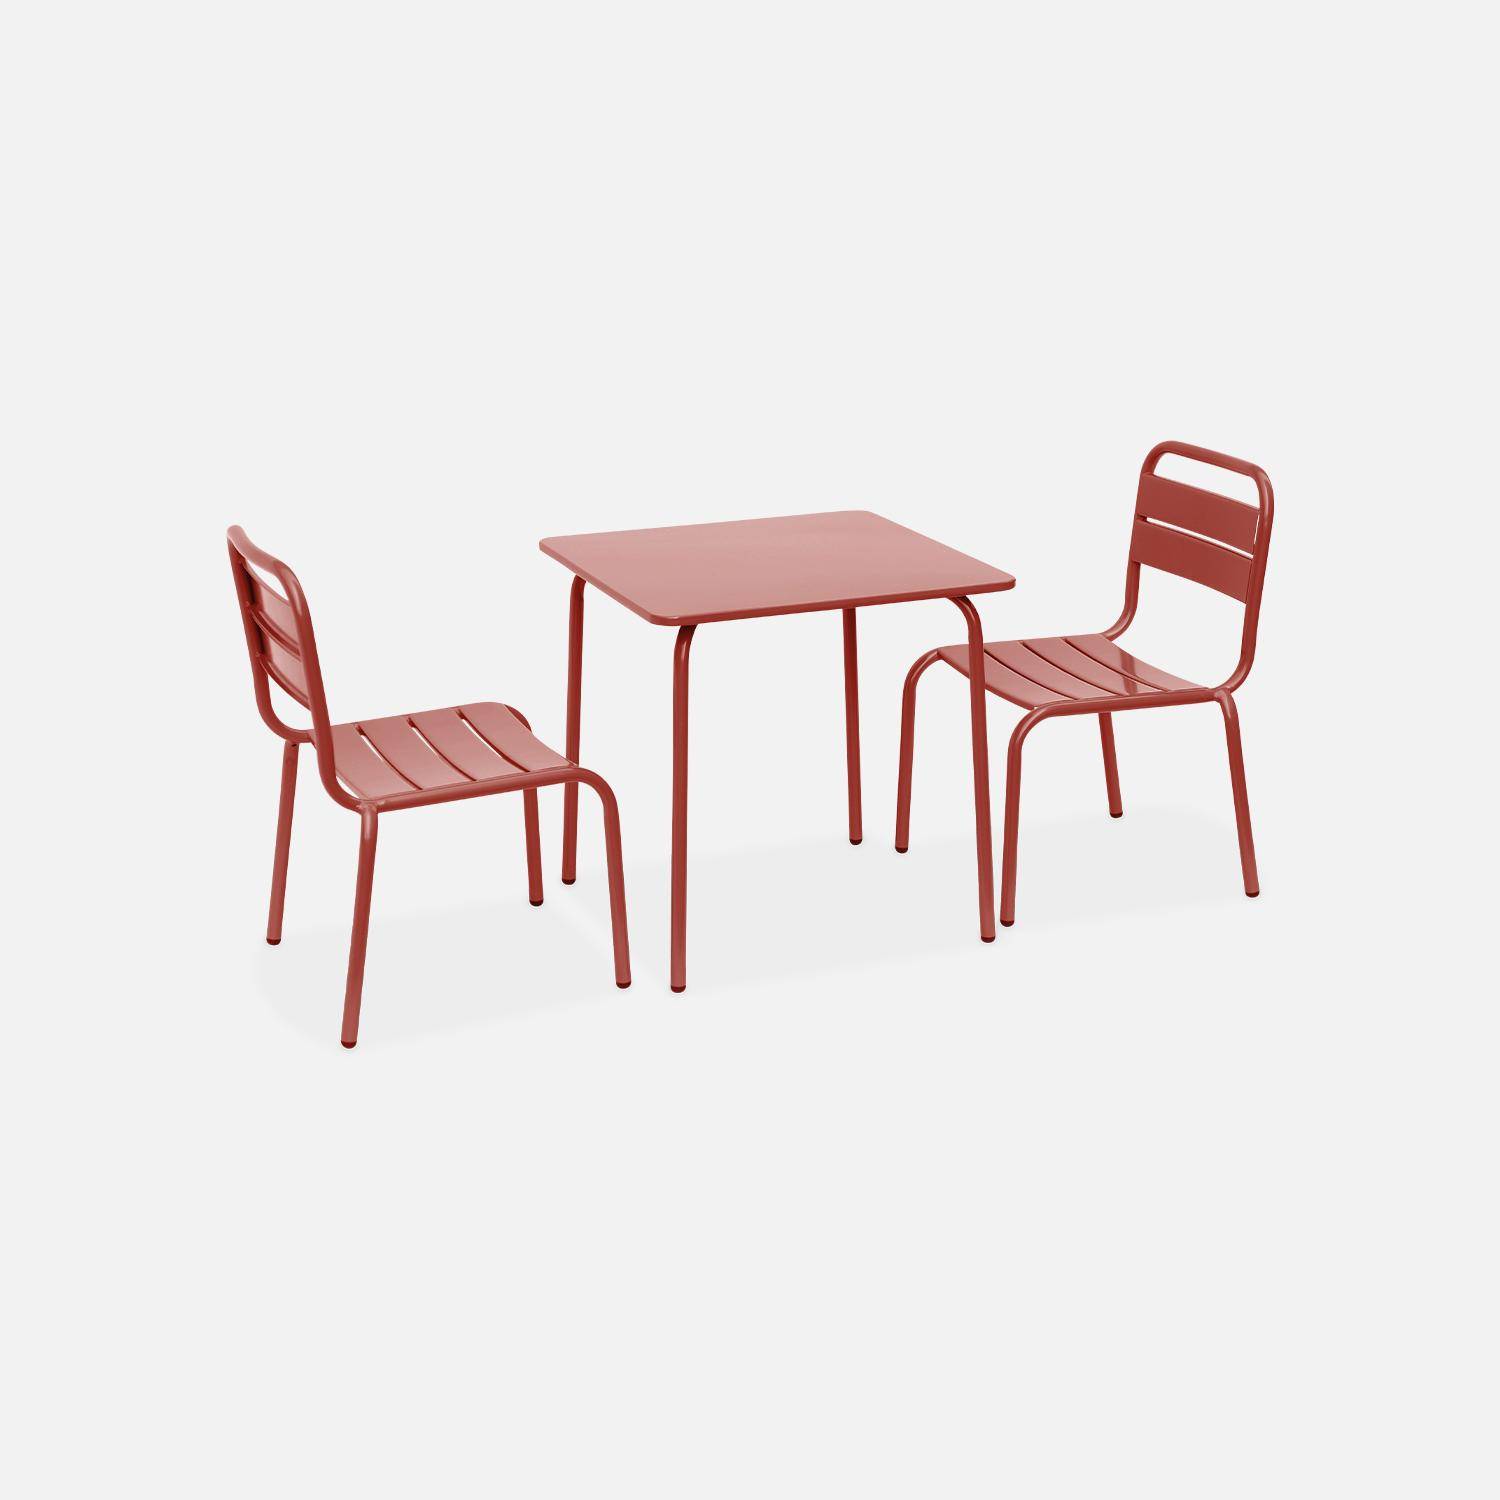 Tisch 48x48cm und 2 Stühle für Kinder, terrakotta, 48x48cm, für draußen verwendbar - Anna Photo3